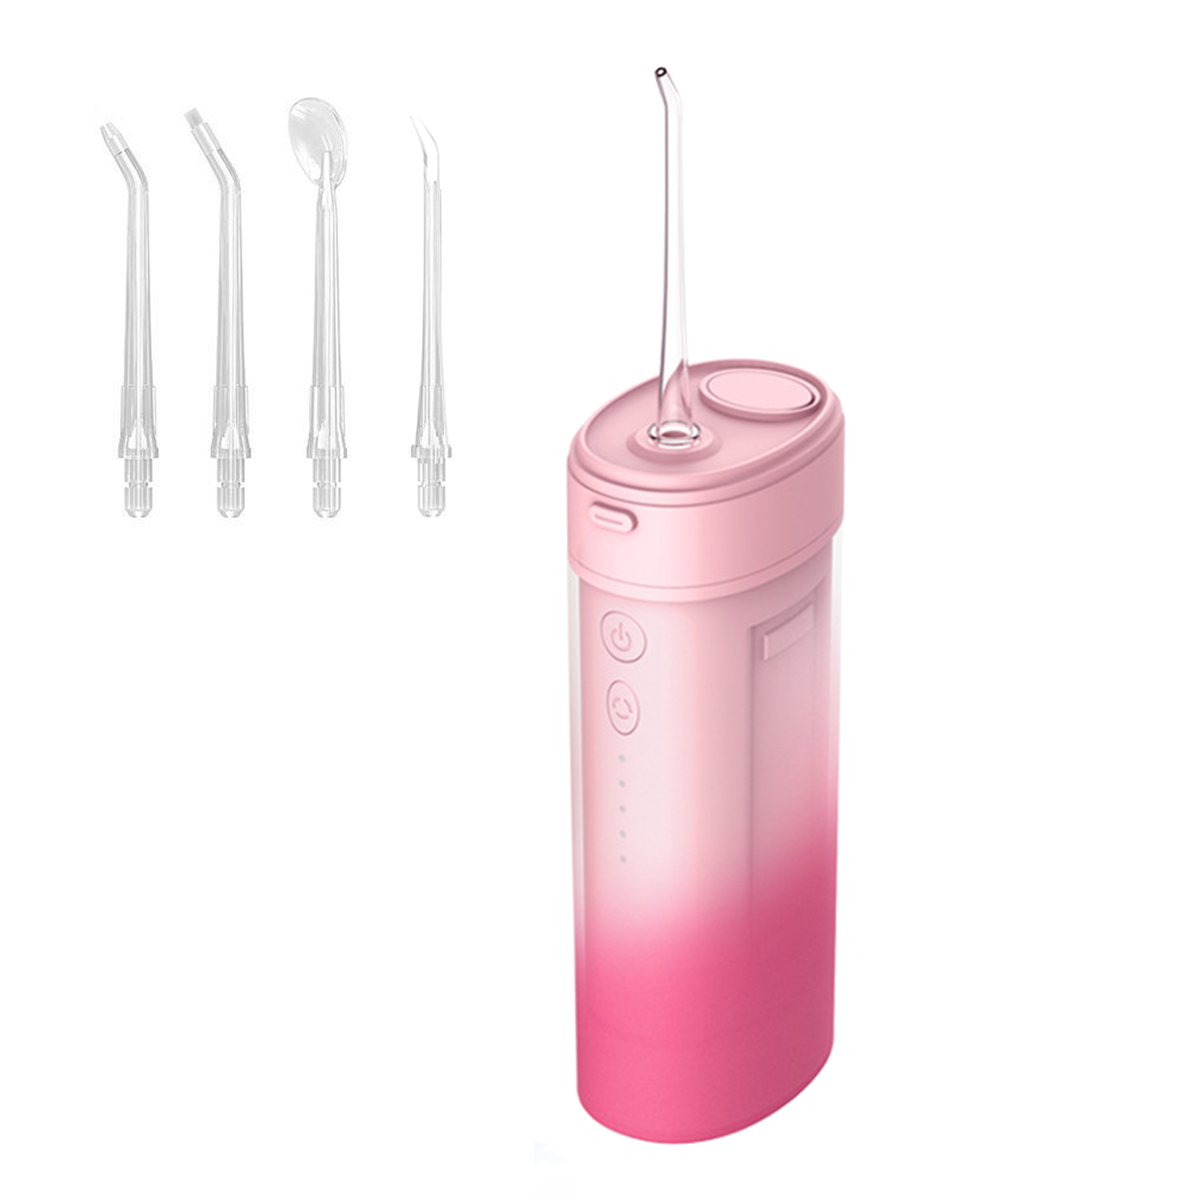 KINSI Munddusche Elektrische, Dentalwerkzeug IPX7 Düsen, Oral Care Modi/4 4 Zahnreiniger